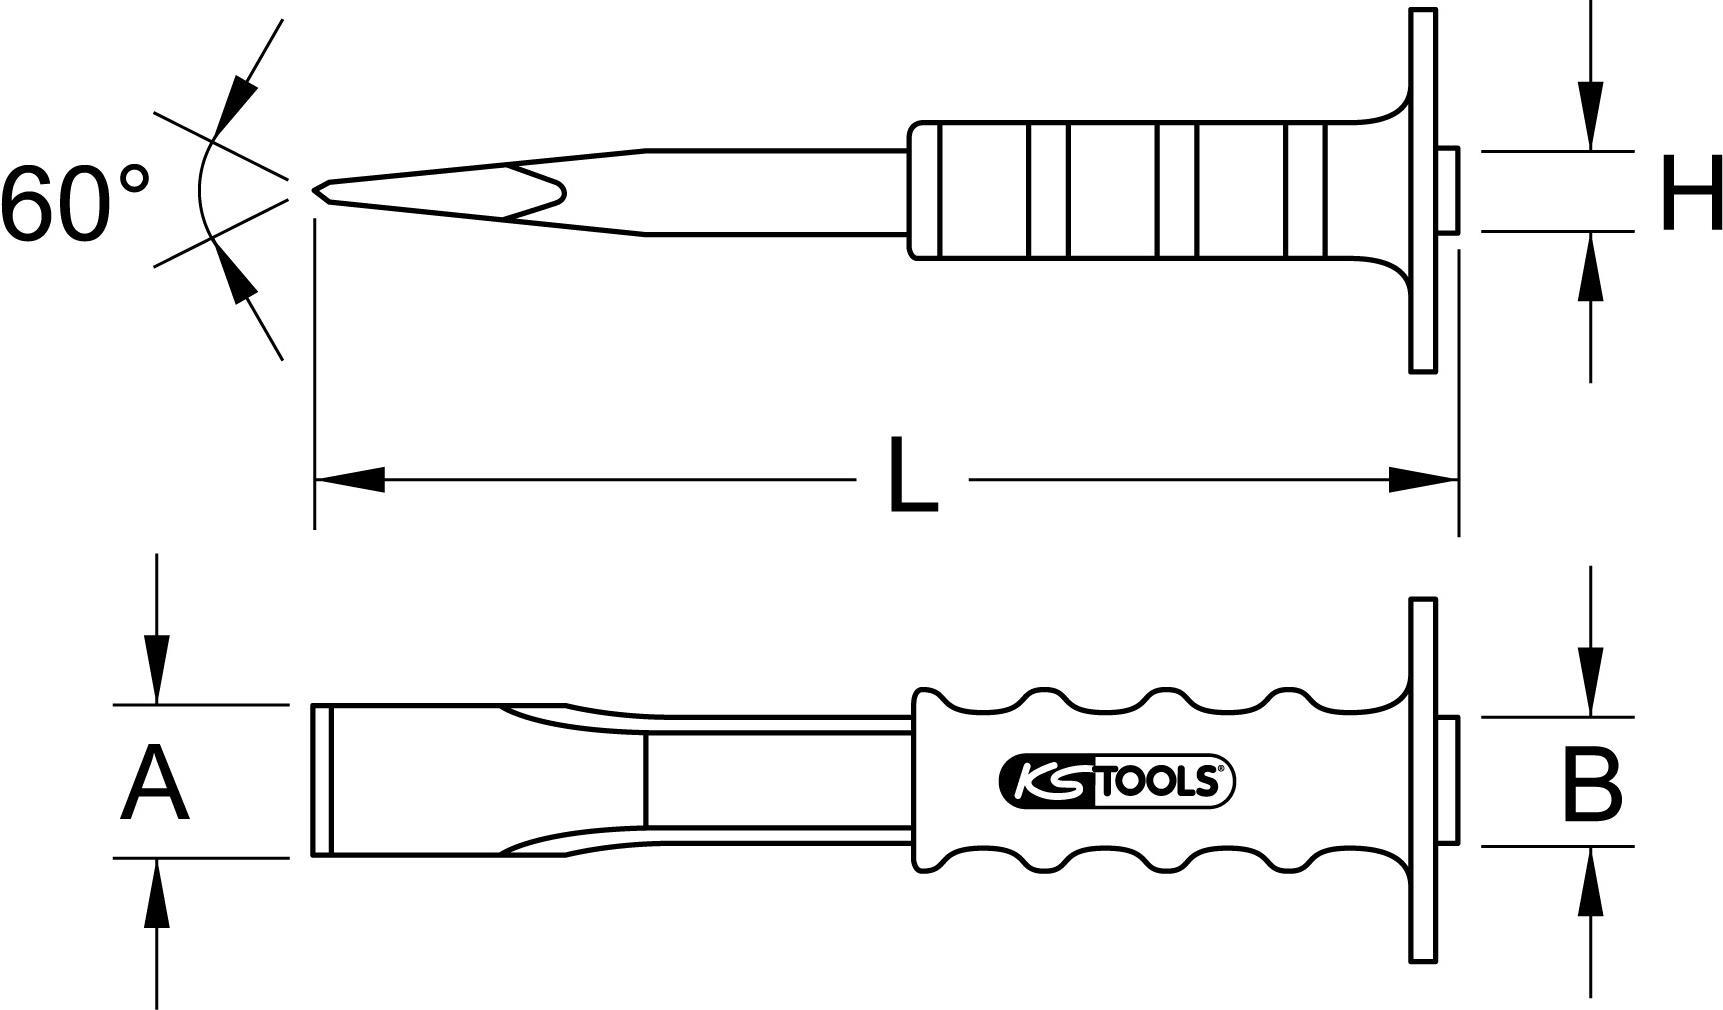 KS TOOLS Werkzeuge-Maschinen GmbH Maurermeißel mit Handschutzgriff,flach oval,33x800mm (162.0208)